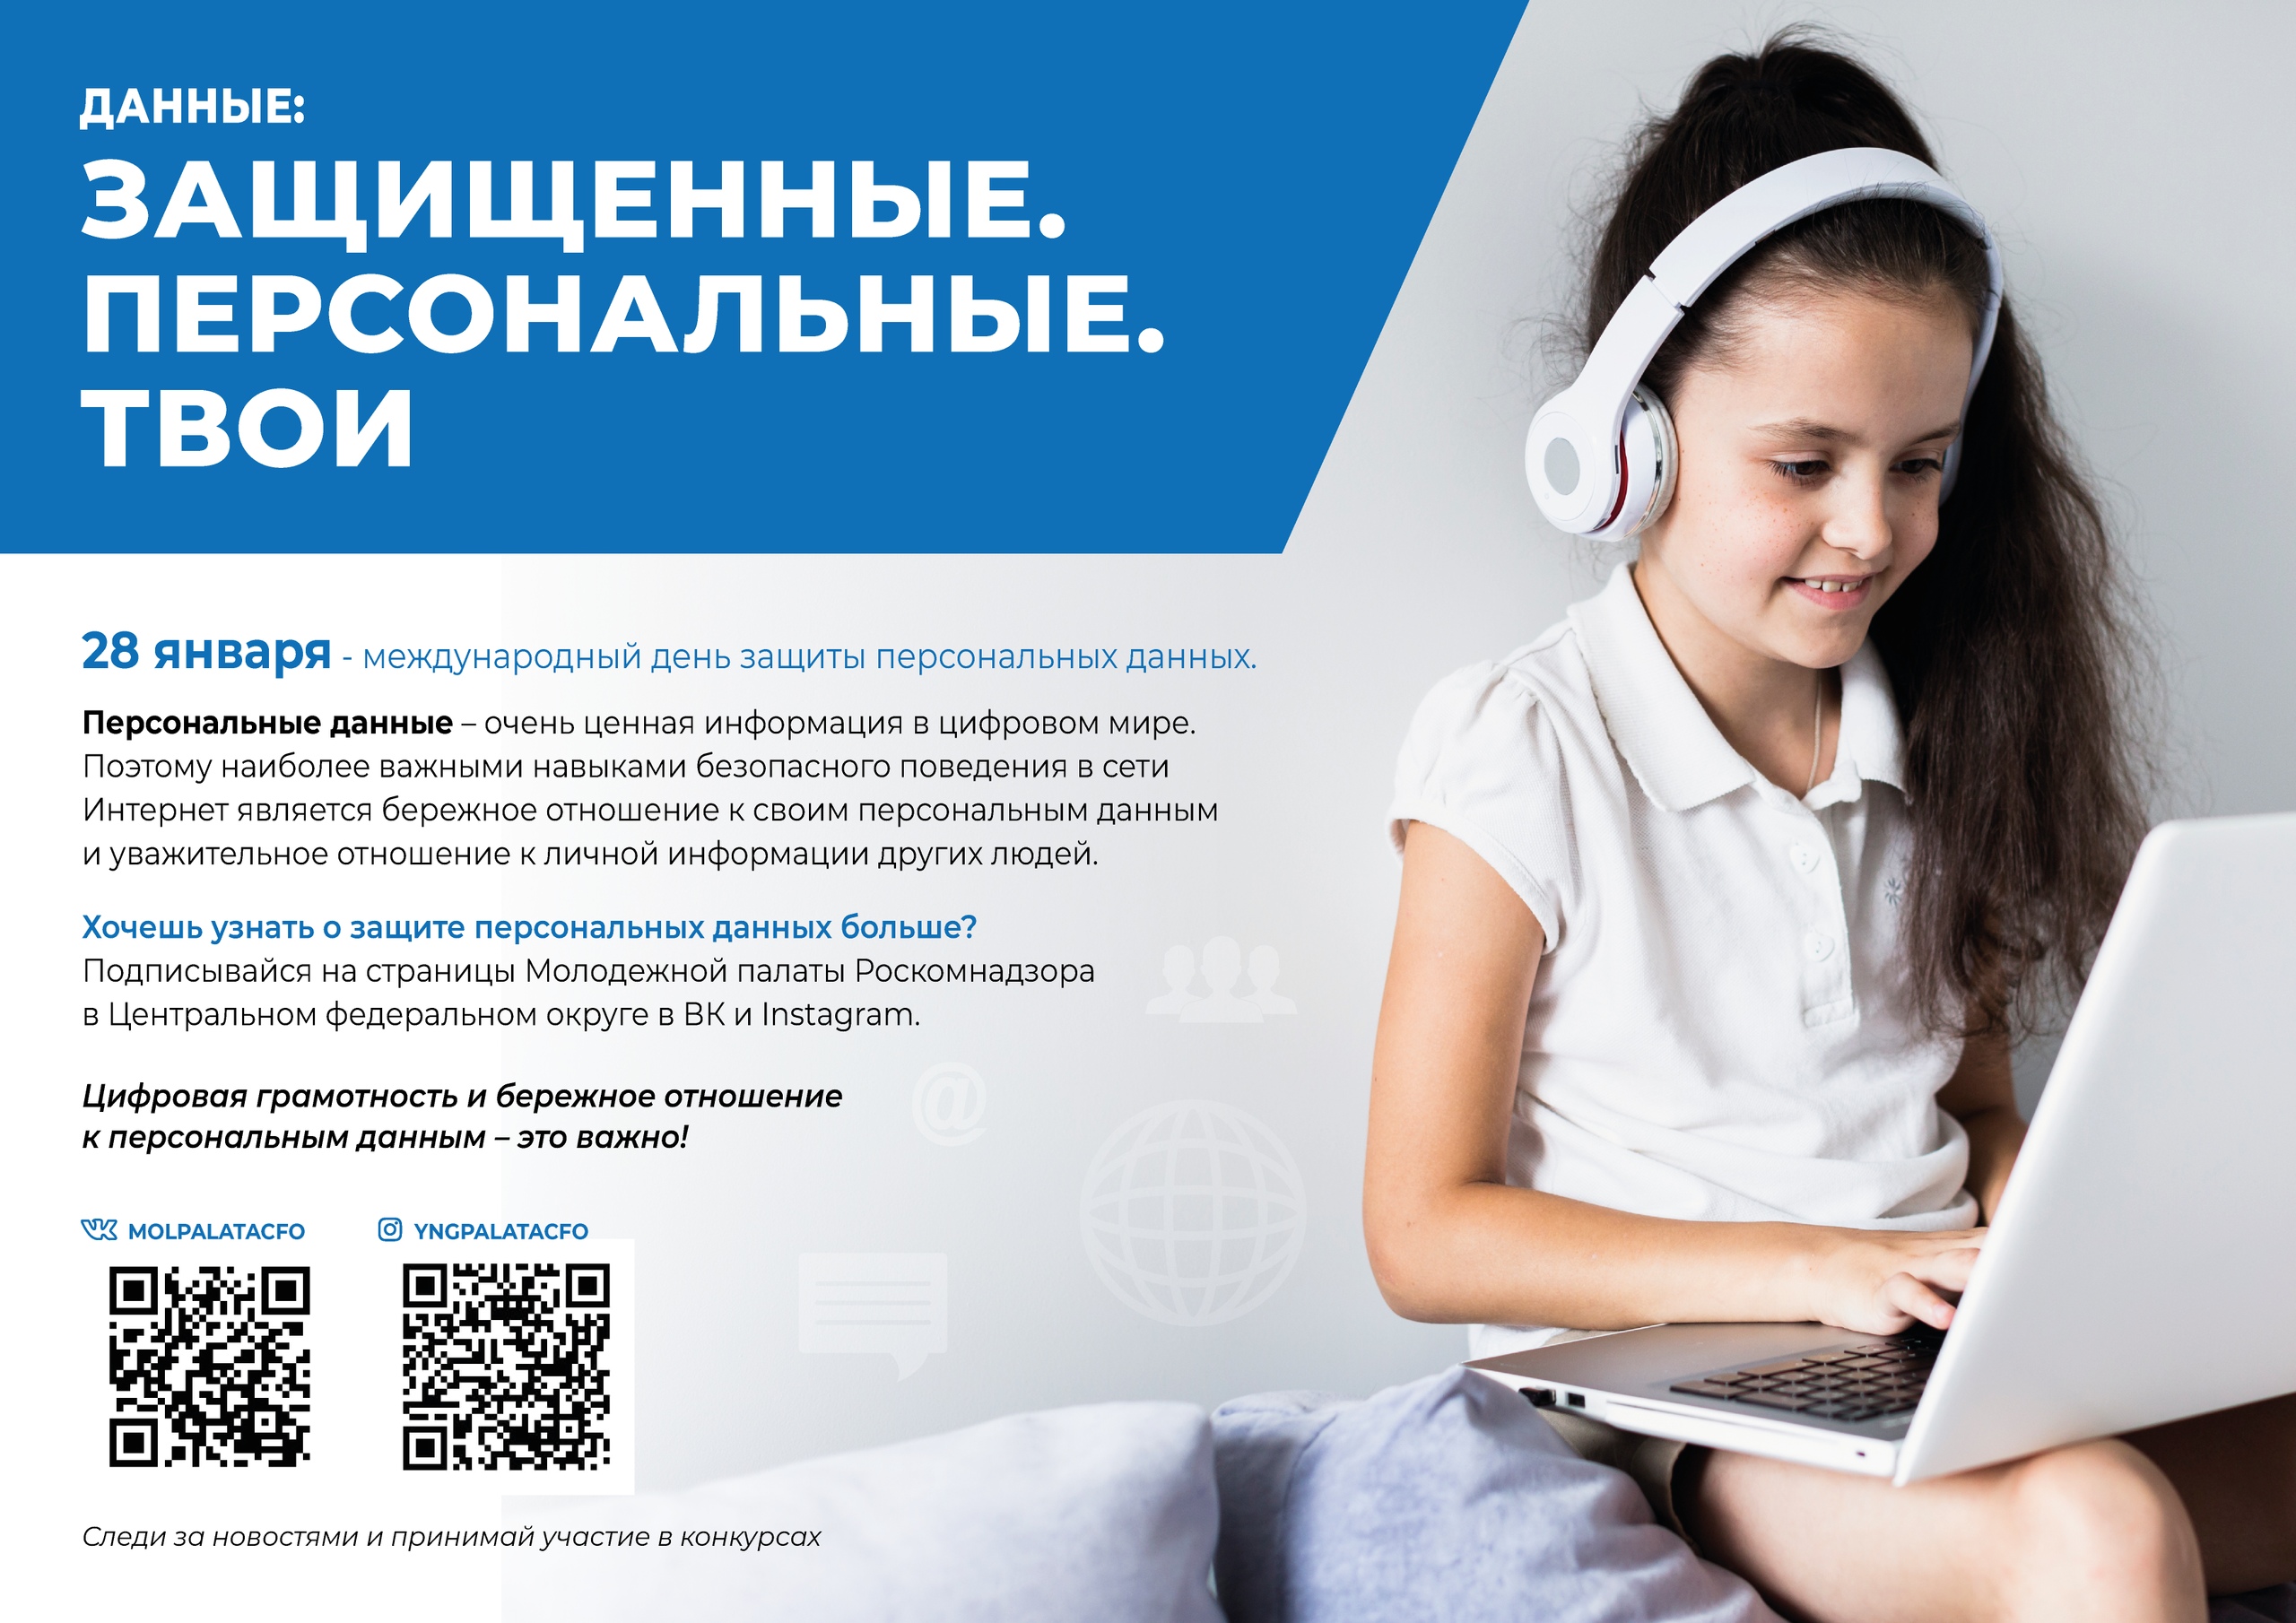 http://andasosh-1.ucoz.ru/2020-2021/11/mezhdunarodnyj_den_zashhity_personalnykh_dannykh.jpg